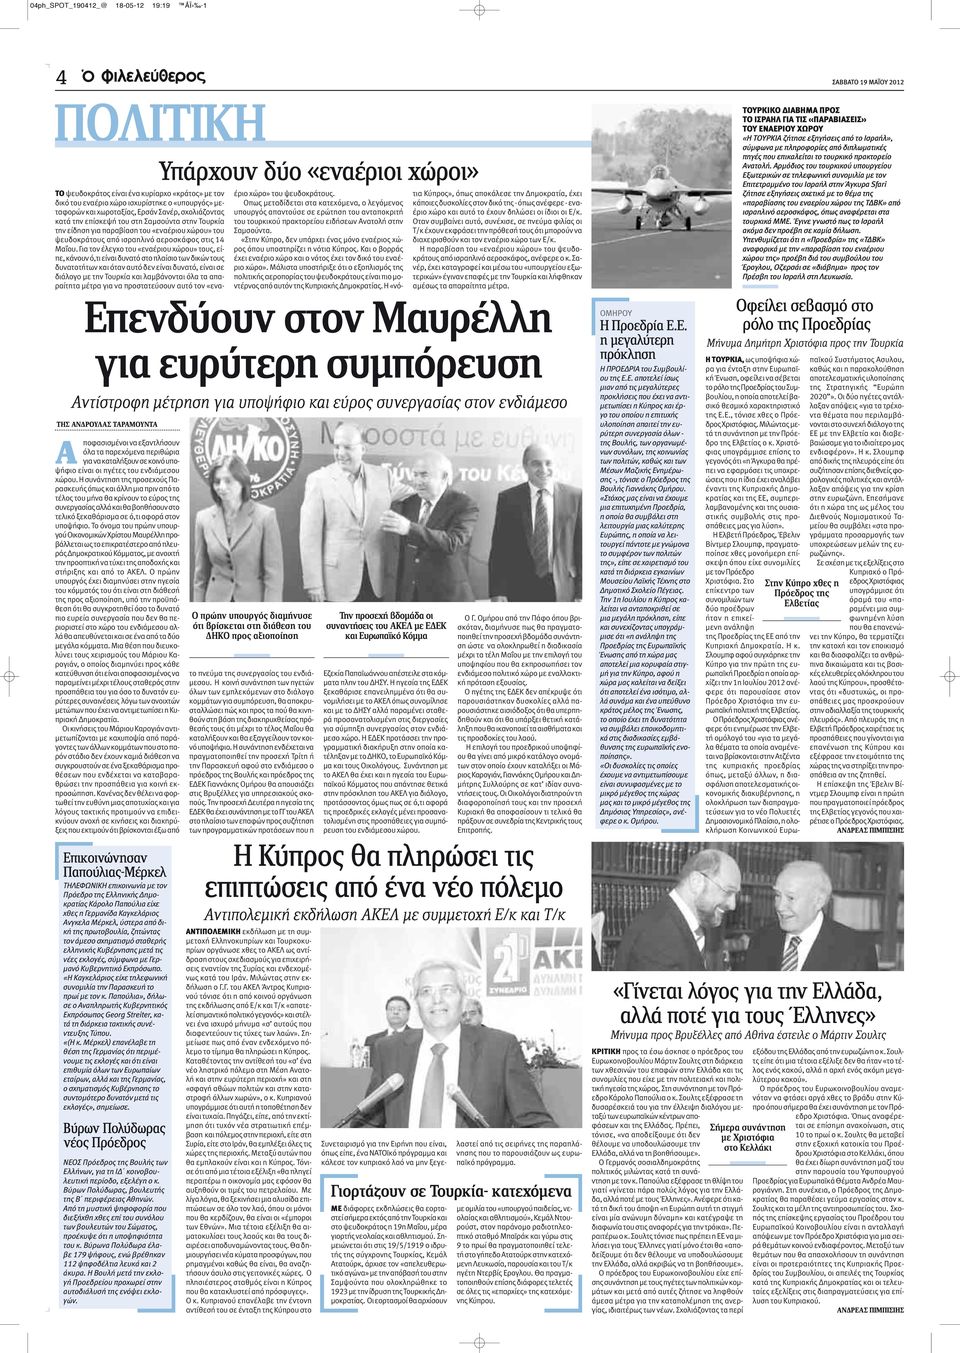 Γ. του ΑΚΕΛ Άντρος Κυπριανού τόνισε ότι η από κοινού οργάνωση της εκδήλωσης από Ε/κ και Τ/κ «αποτελεί σημαντικό πολιτικό γεγονός» και στέλνει ένα ισχυρό μήνυμα «σ αυτούς που διαφεντεύουν τις τύχες